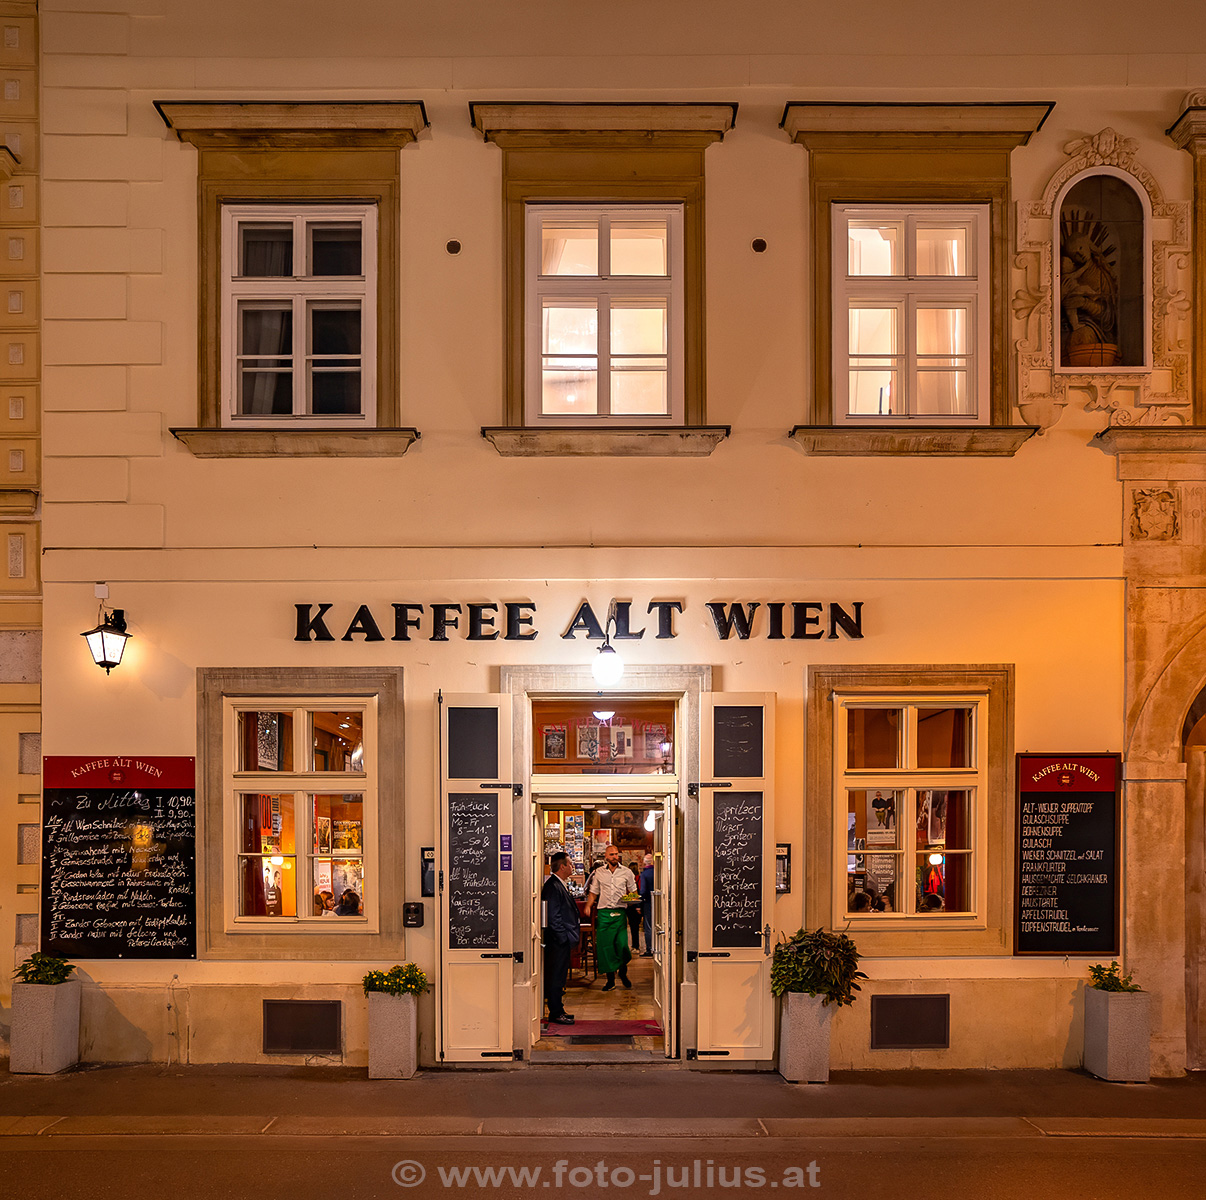 W_7894a_Kaffee_Alt_Wien.jpg, 564kB